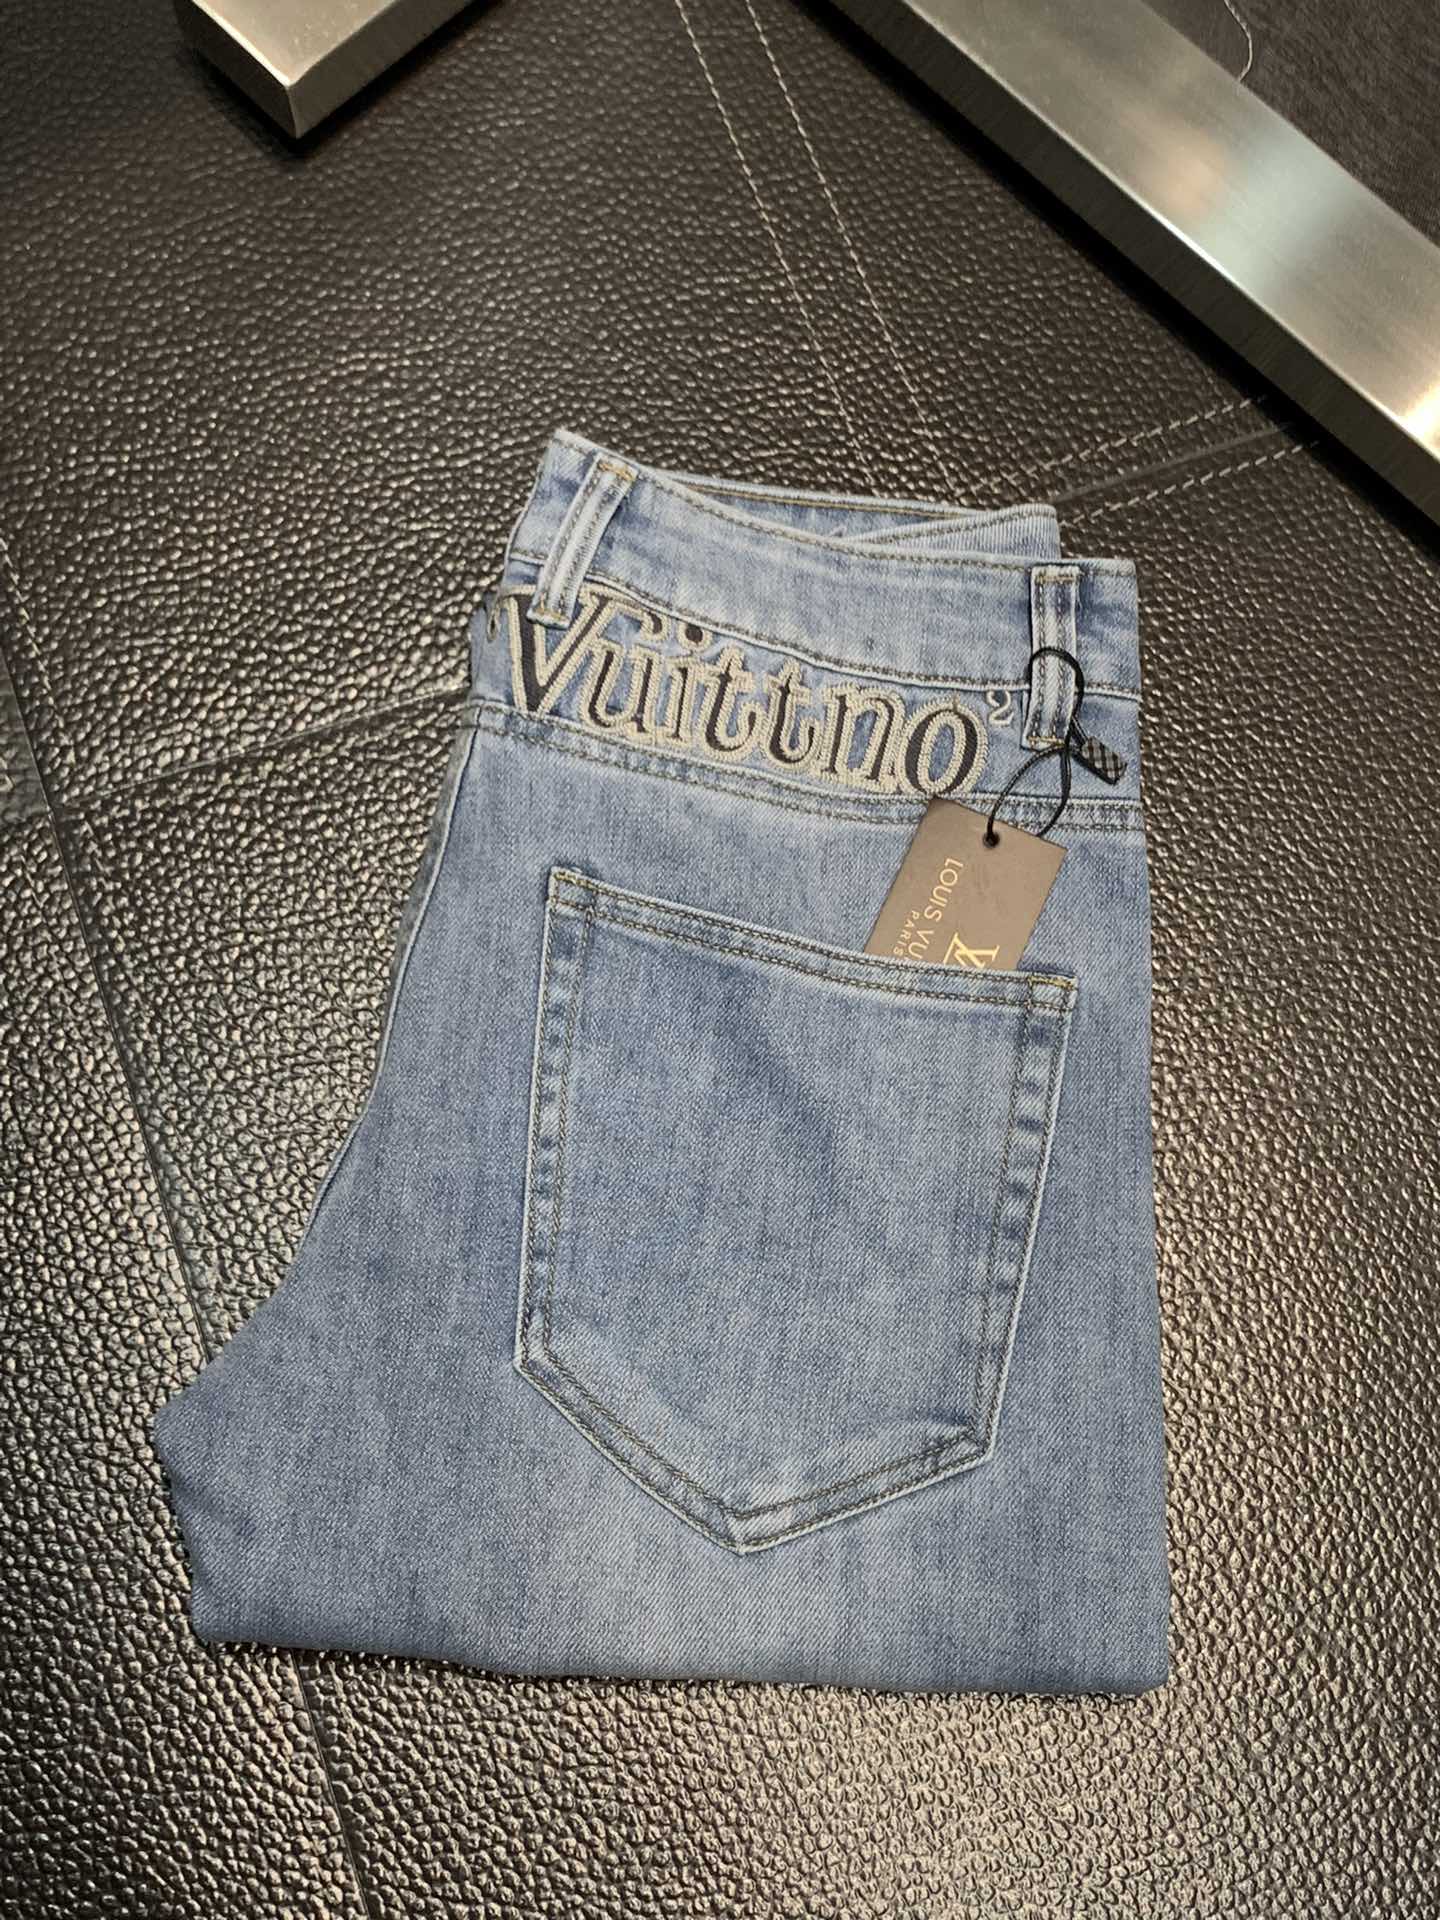 Louis Vuitton Shop
 Clothing Jeans Casual